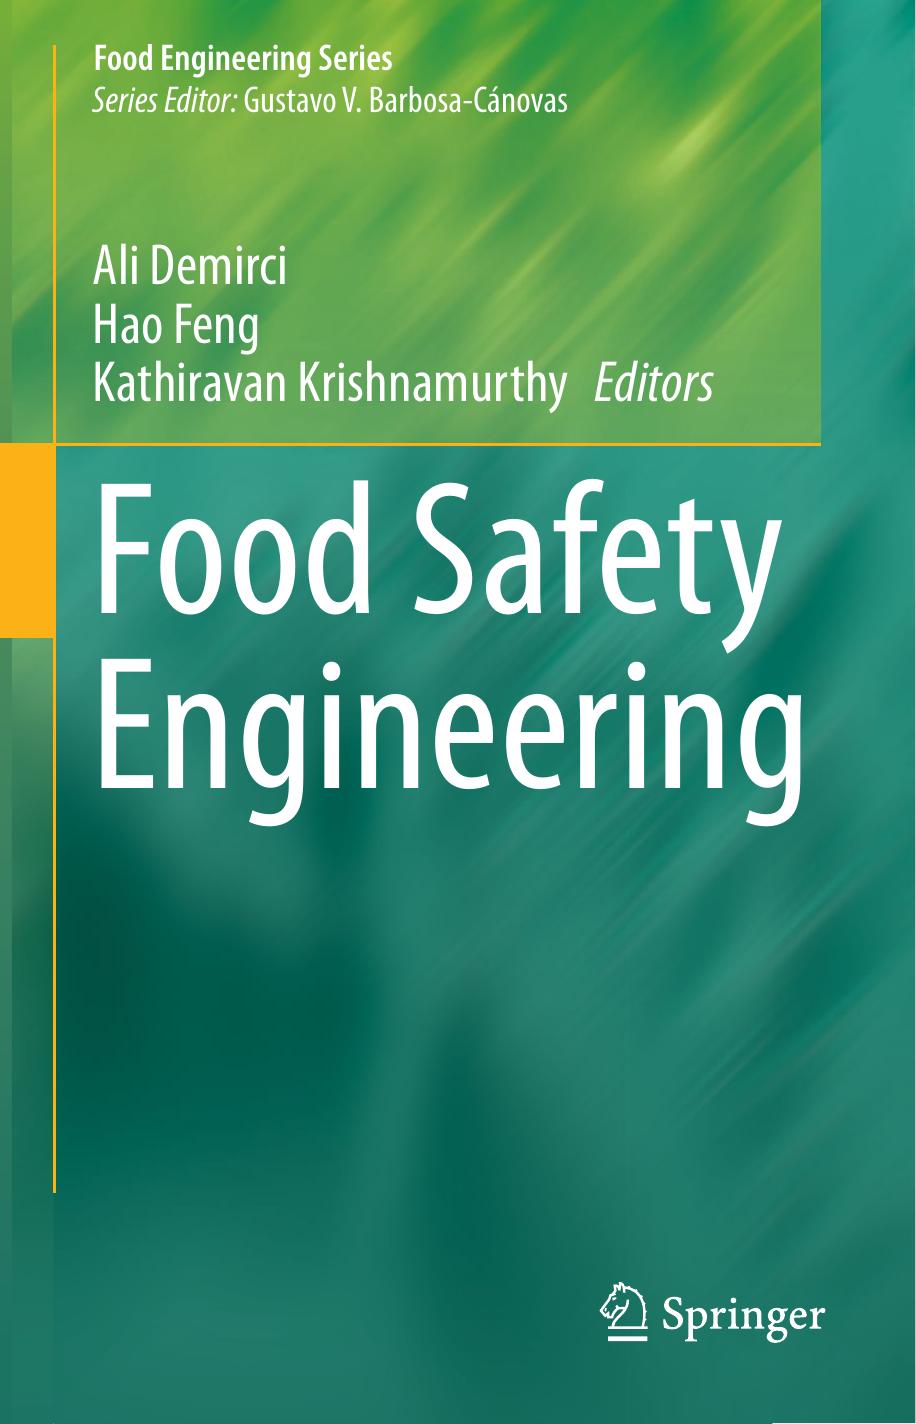 Food Safety Engineering-Springer International Publishing Springer (2020)